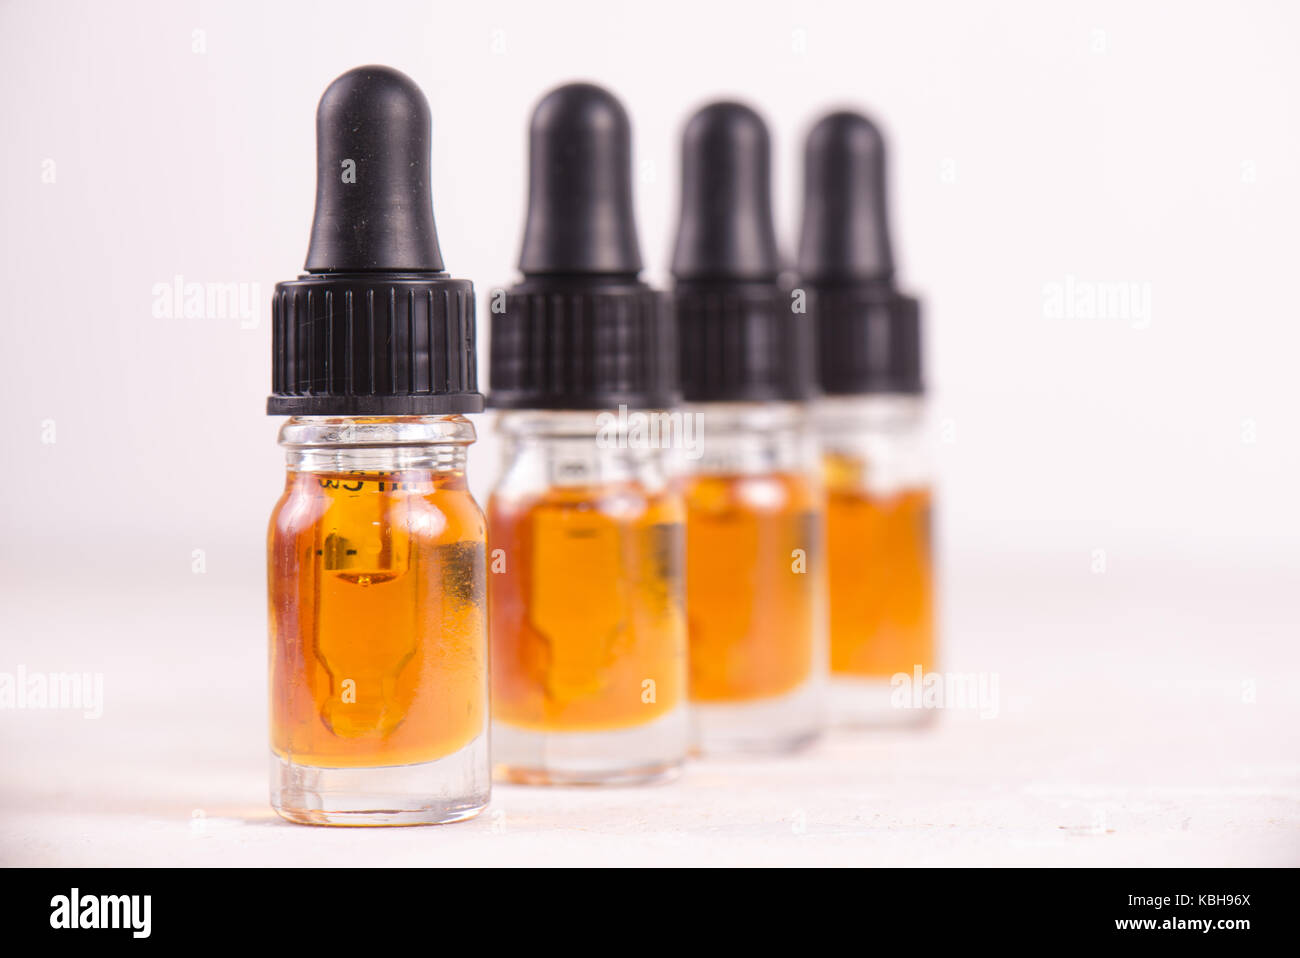 Makro-Detail der Pipette mit CBD-Öl, Cannabis live Harz Extraktion isoliert auf weiss - medizinisches Marihuana-Konzept Stockfoto